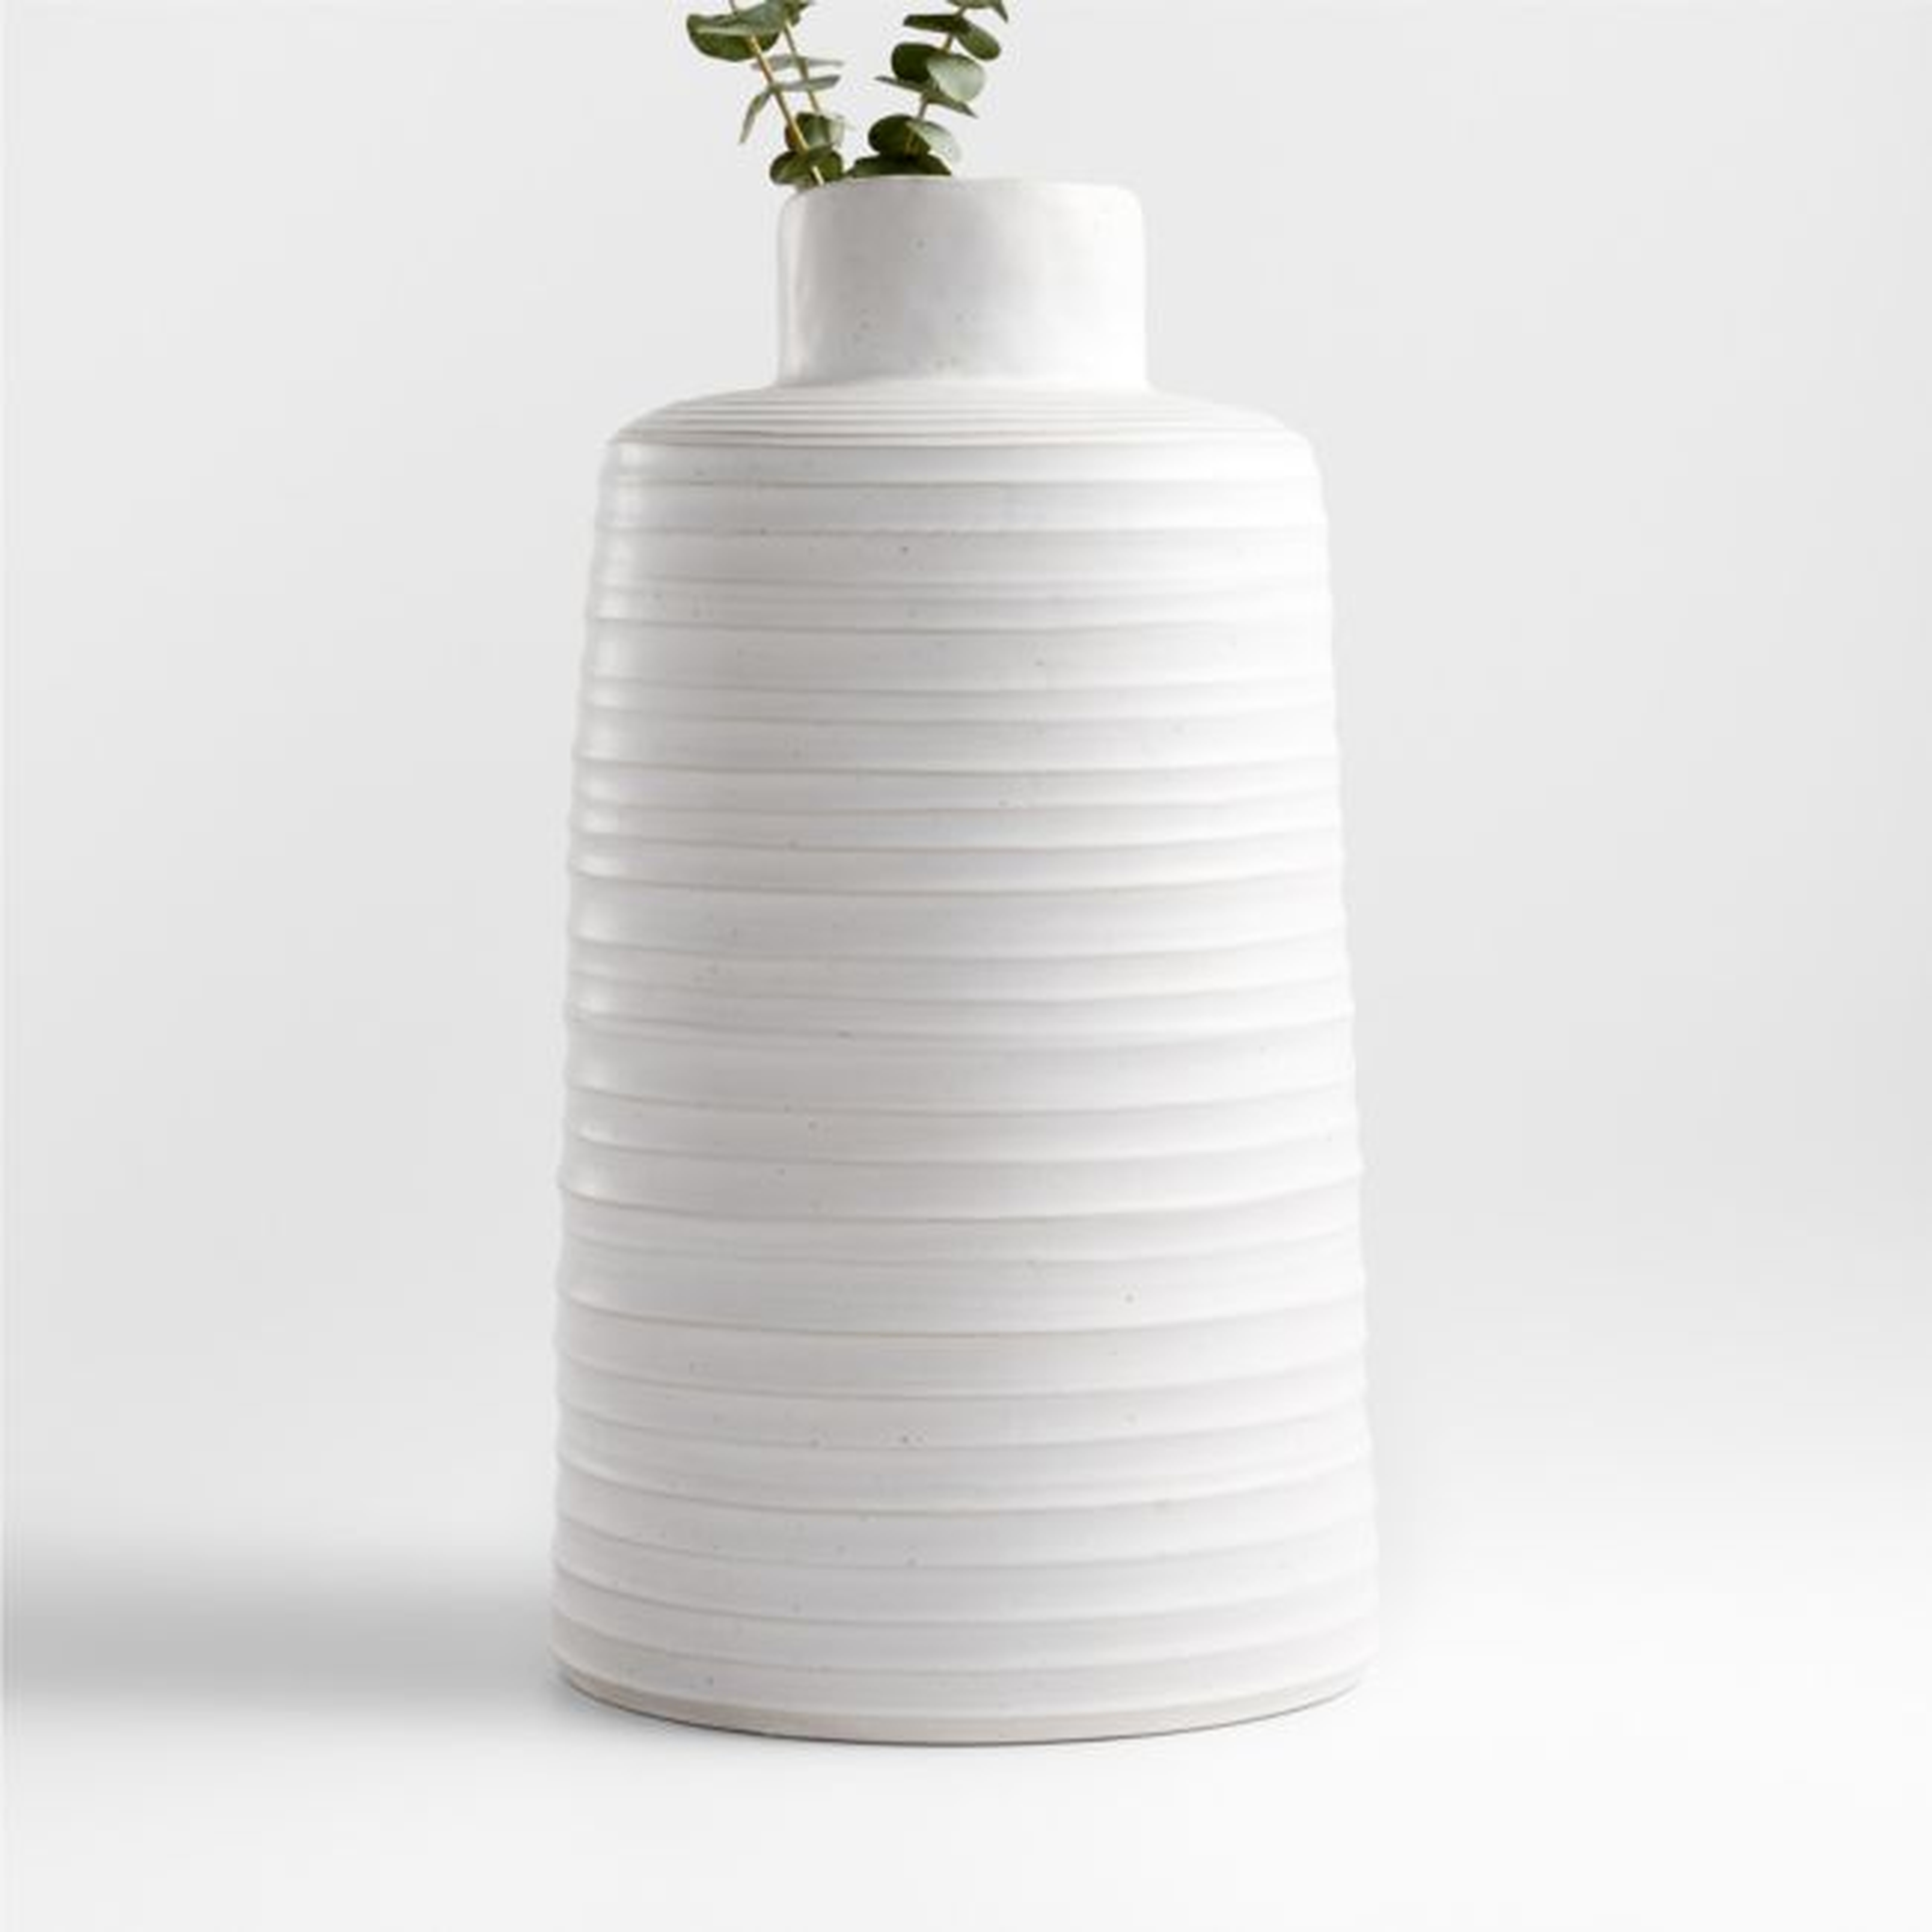 Holden Speckled White Vase 18" - Crate and Barrel